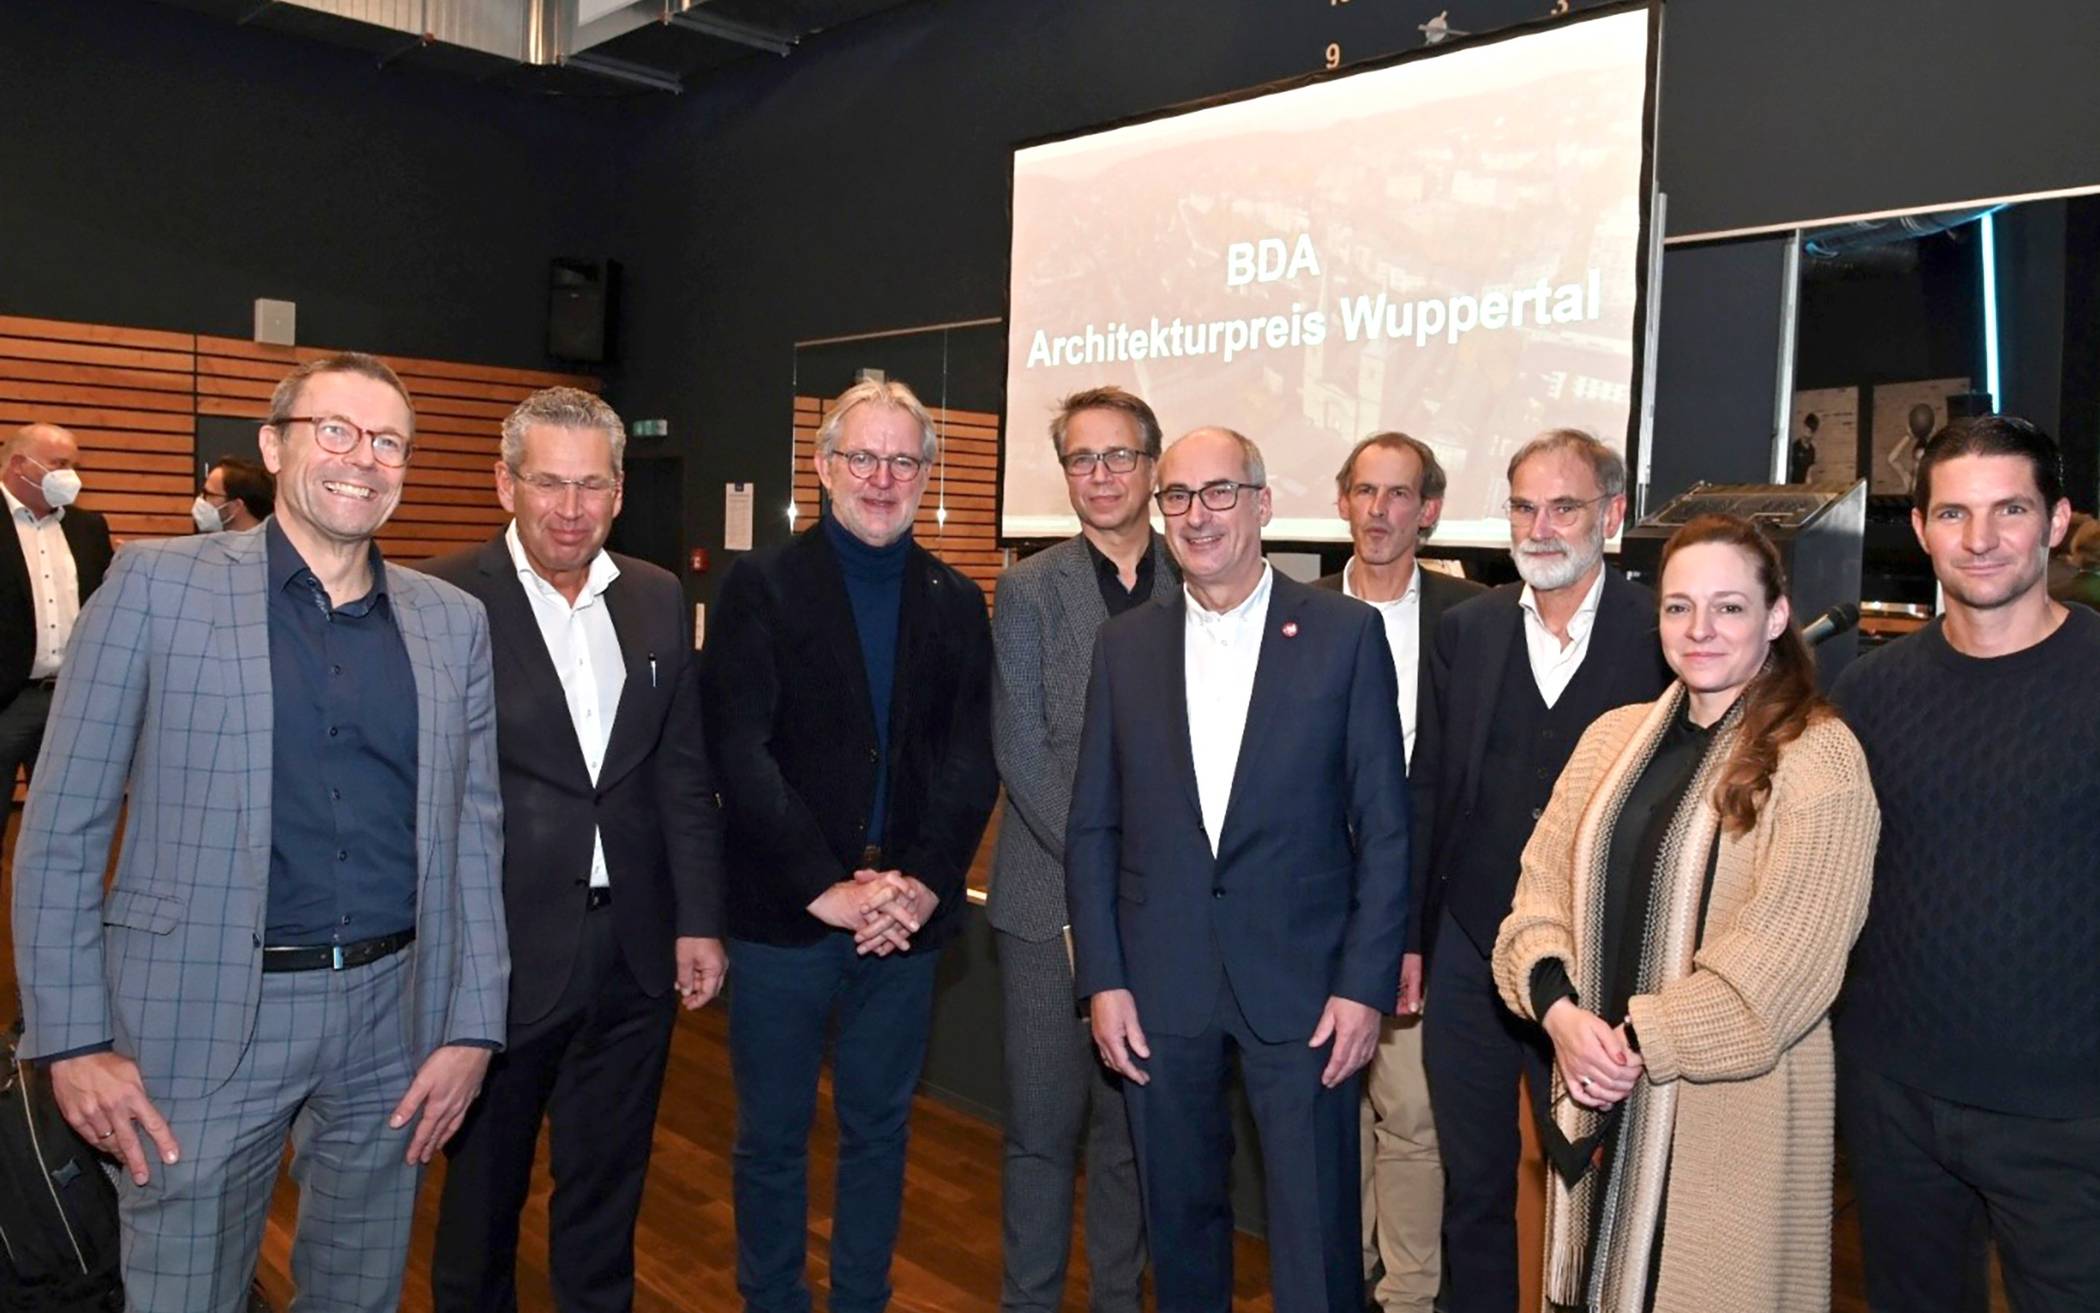  Die Preisträger und Gäste bei der Verleihung des „Architekturpreises Wuppertal 2020“ durch die Wuppertaler Sektion des Bundes Deutscher Architektinnen und Architekten (BDA) im Heckinghauser Gaskessel. 